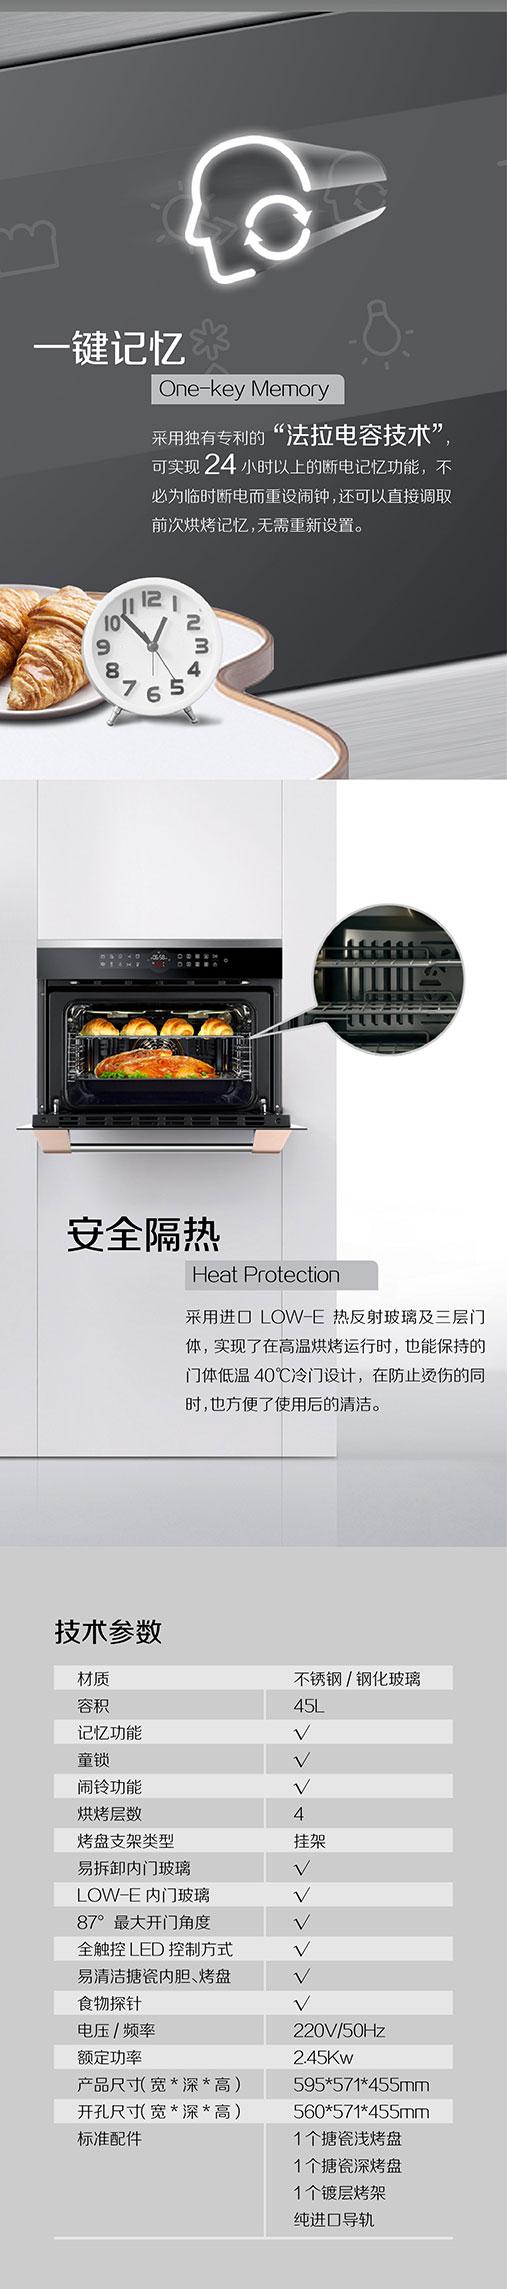 用一张图来了解新款美国GE烤箱GBMC1451ABG